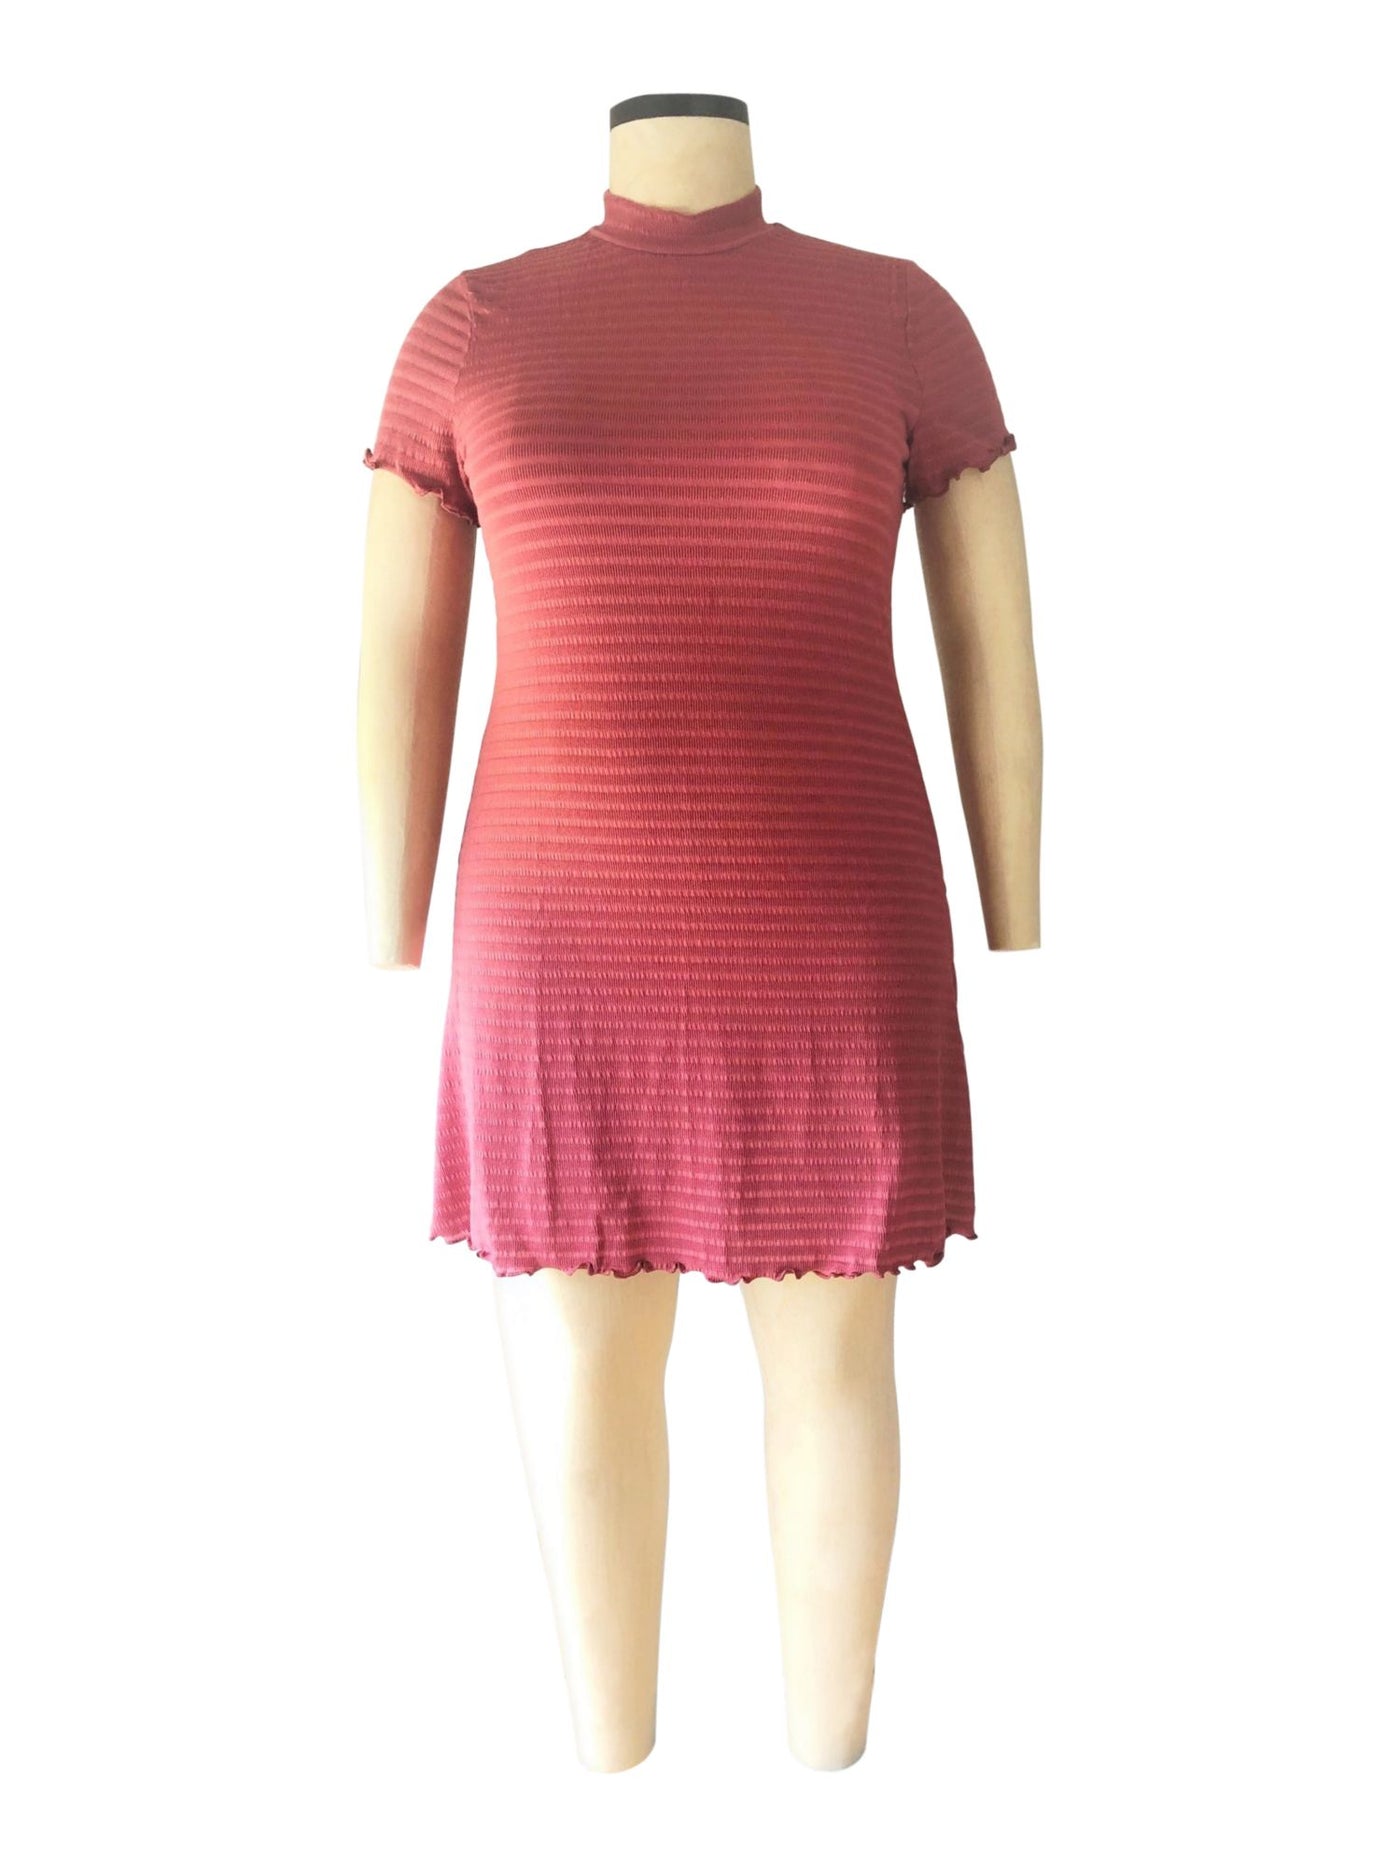 DEREK HEART Womens Pink Short Sleeve Mock Neck Short Shift Dress Plus 2X